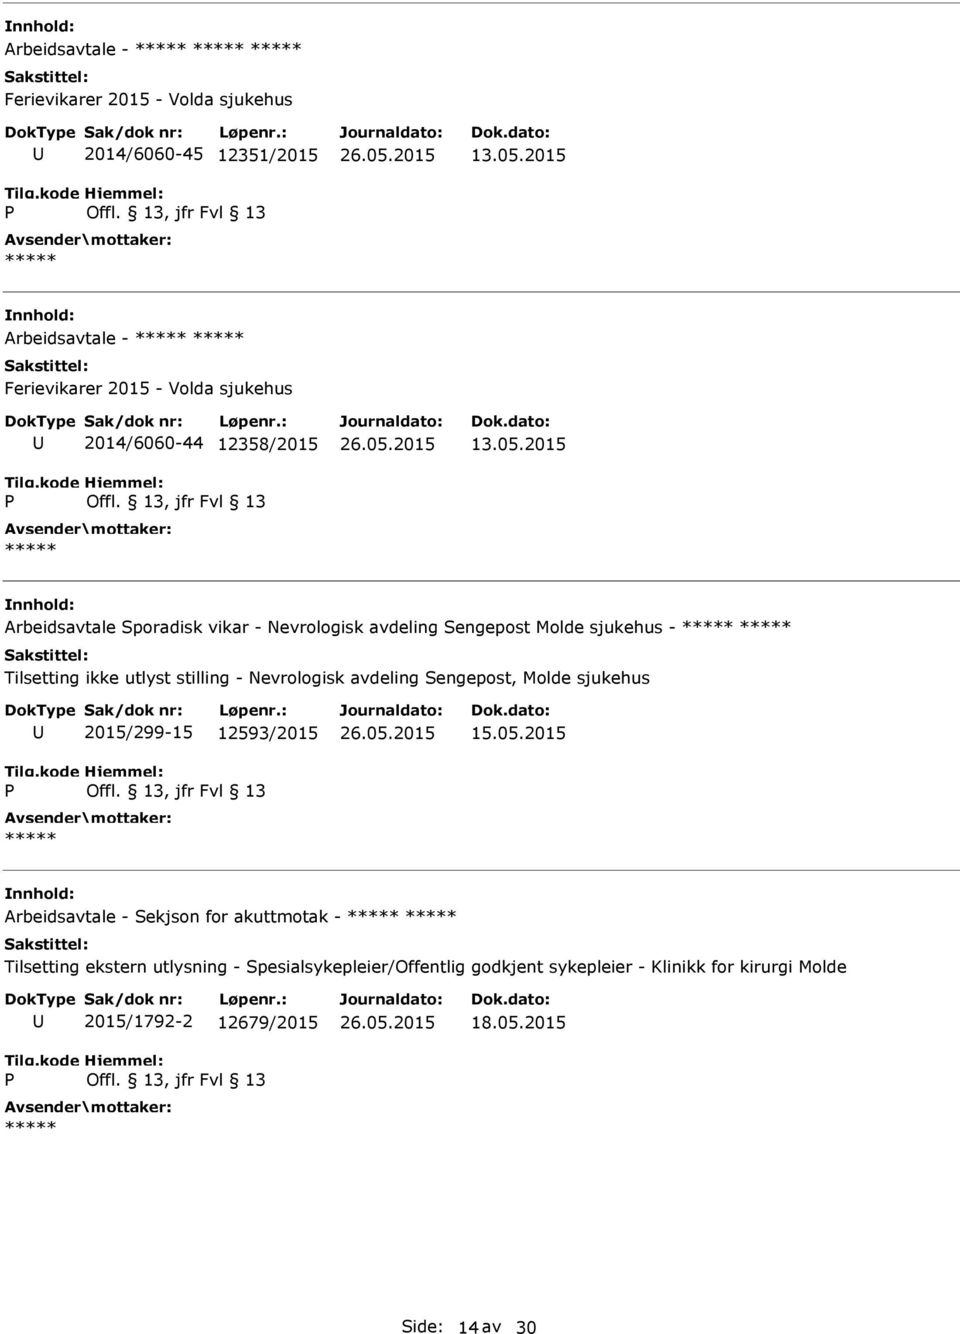 2015 Arbeidsavtale Sporadisk vikar - Nevrologisk avdeling Sengepost Molde sjukehus - Tilsetting ikke utlyst stilling - Nevrologisk avdeling